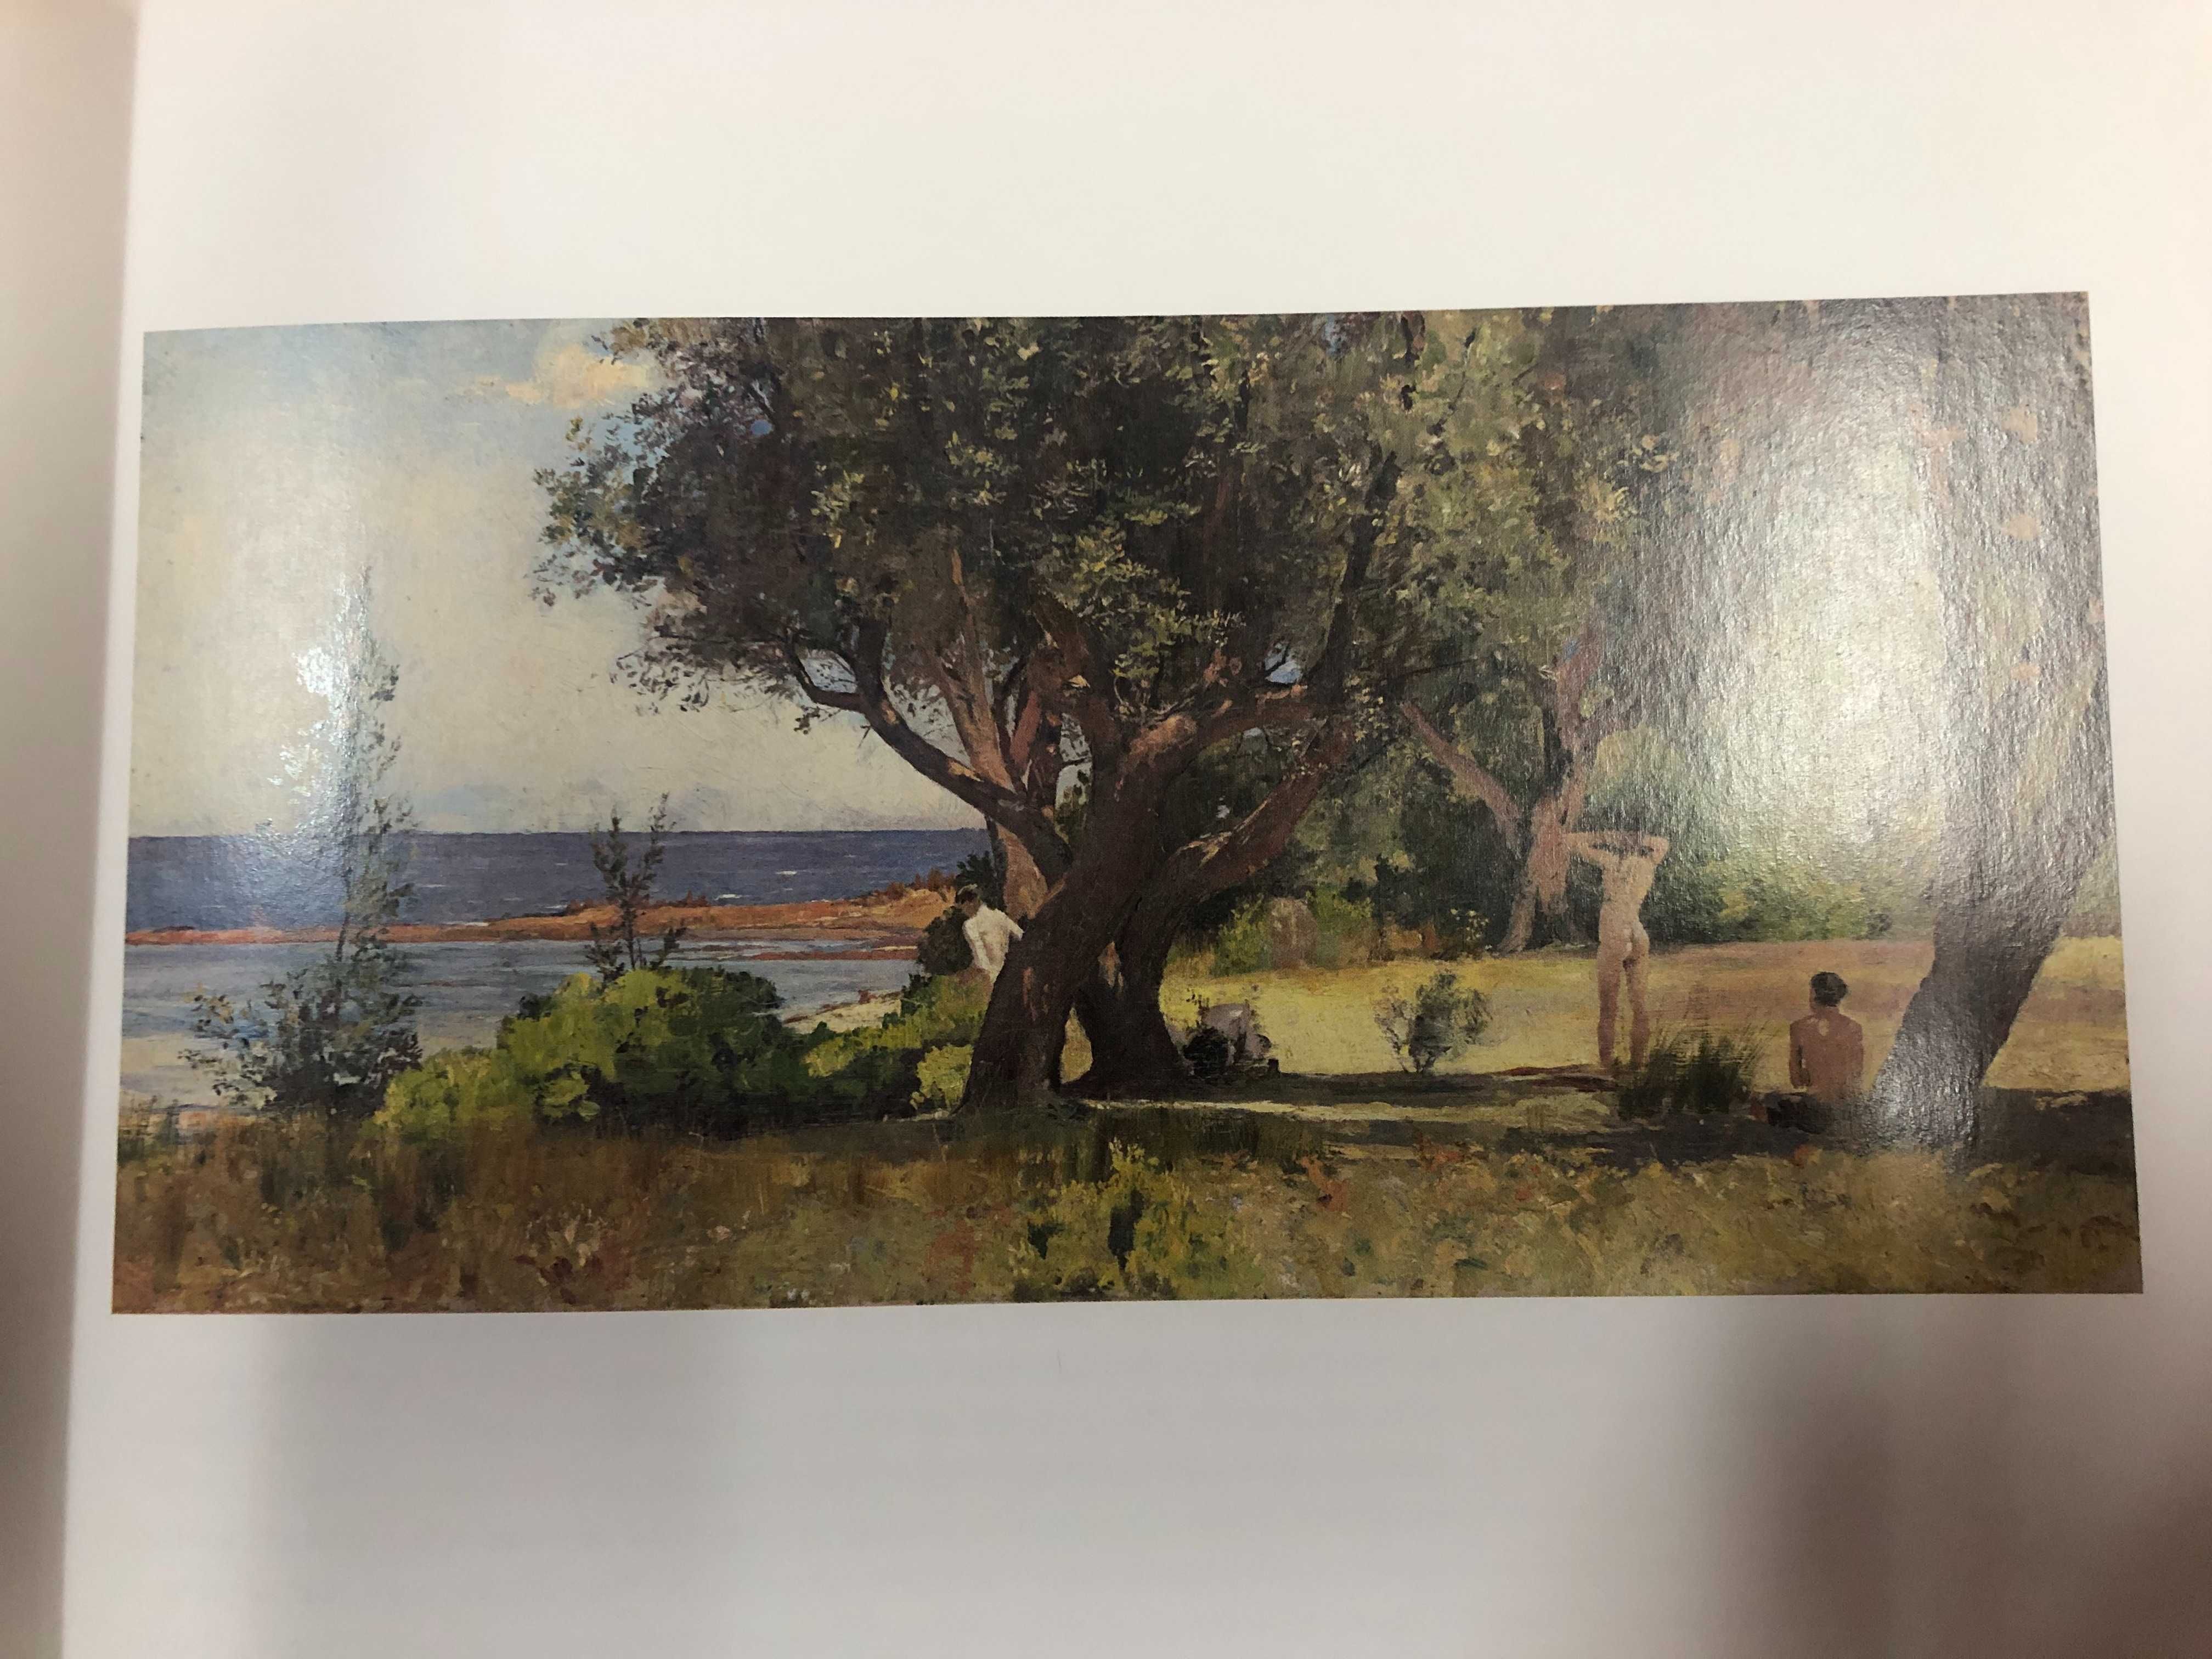 Australia's Impressionists- Tim Bonyhady- Yale University Press